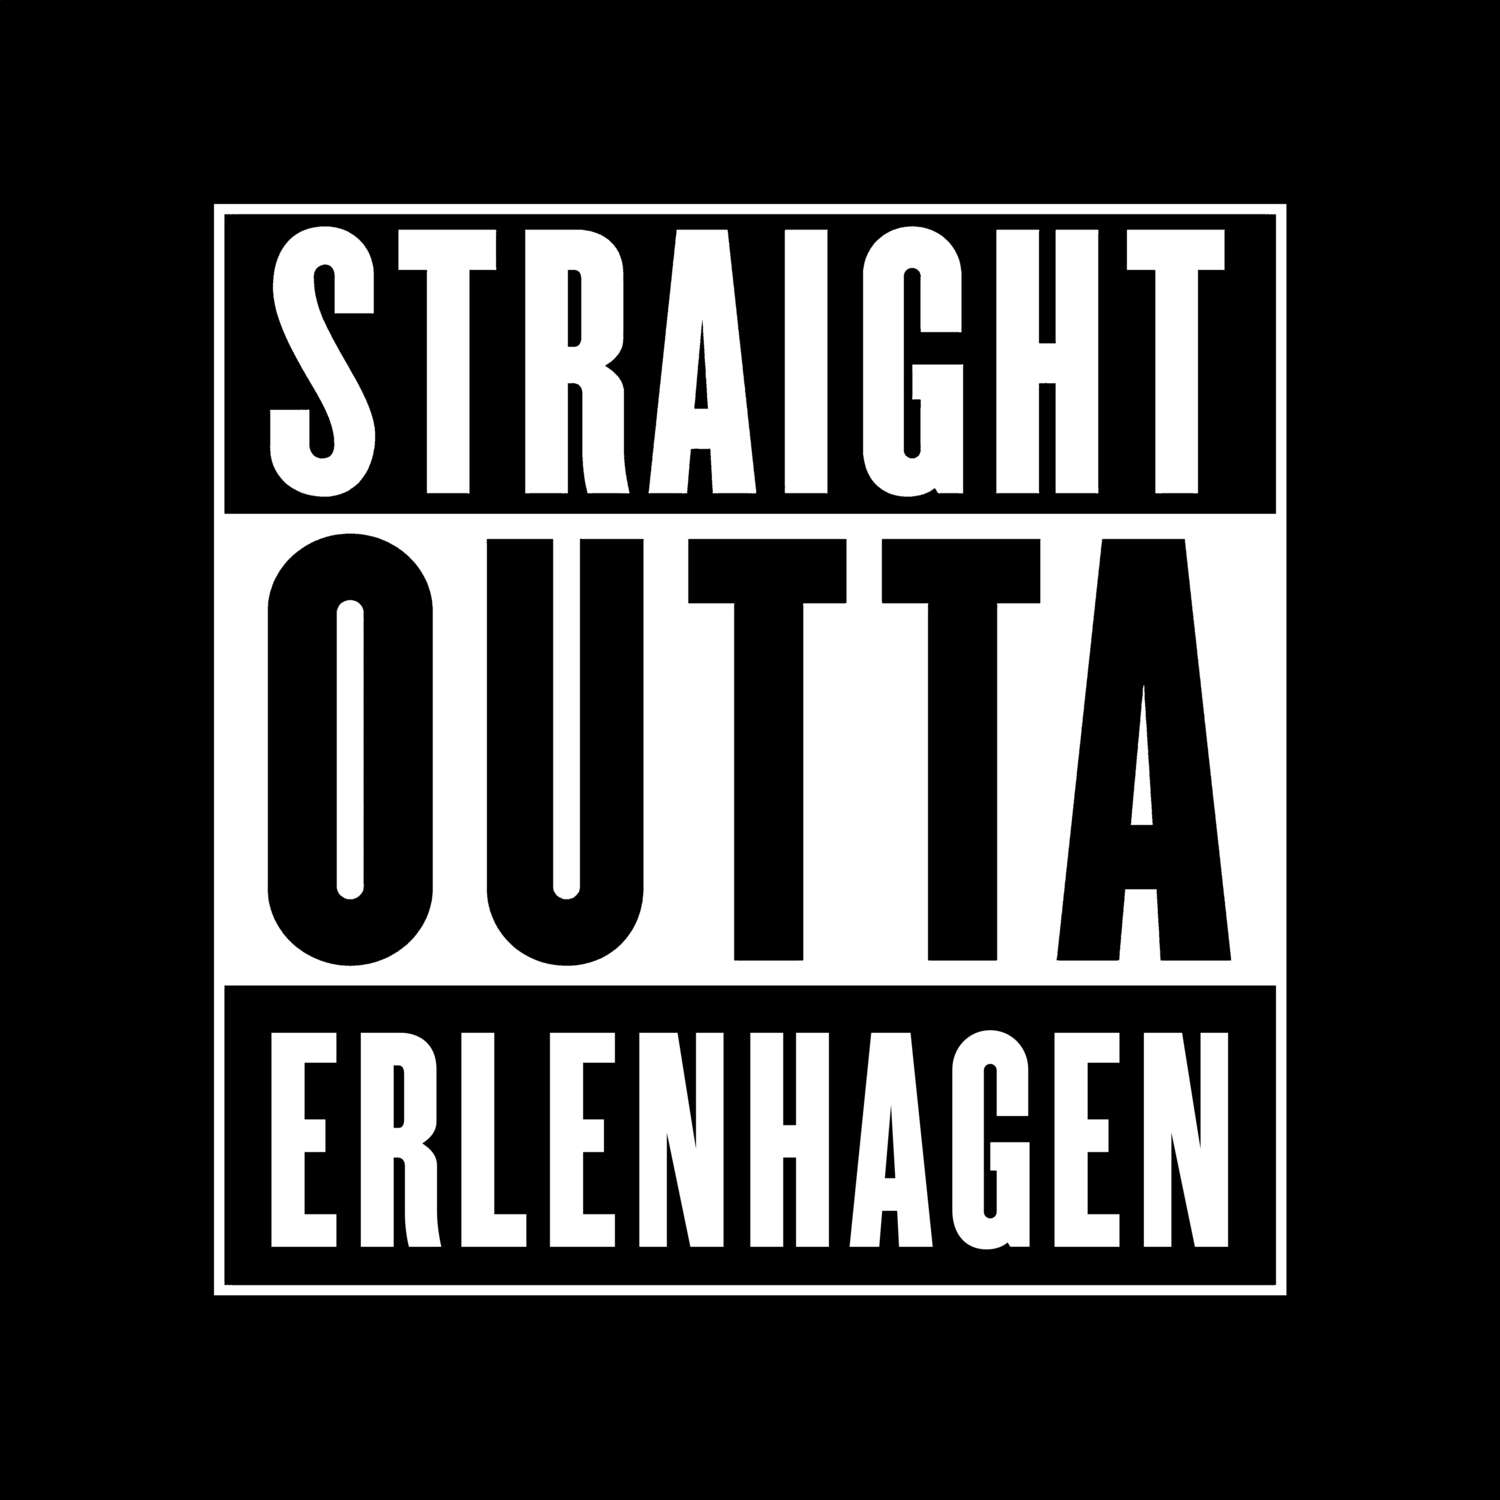 Erlenhagen T-Shirt »Straight Outta«